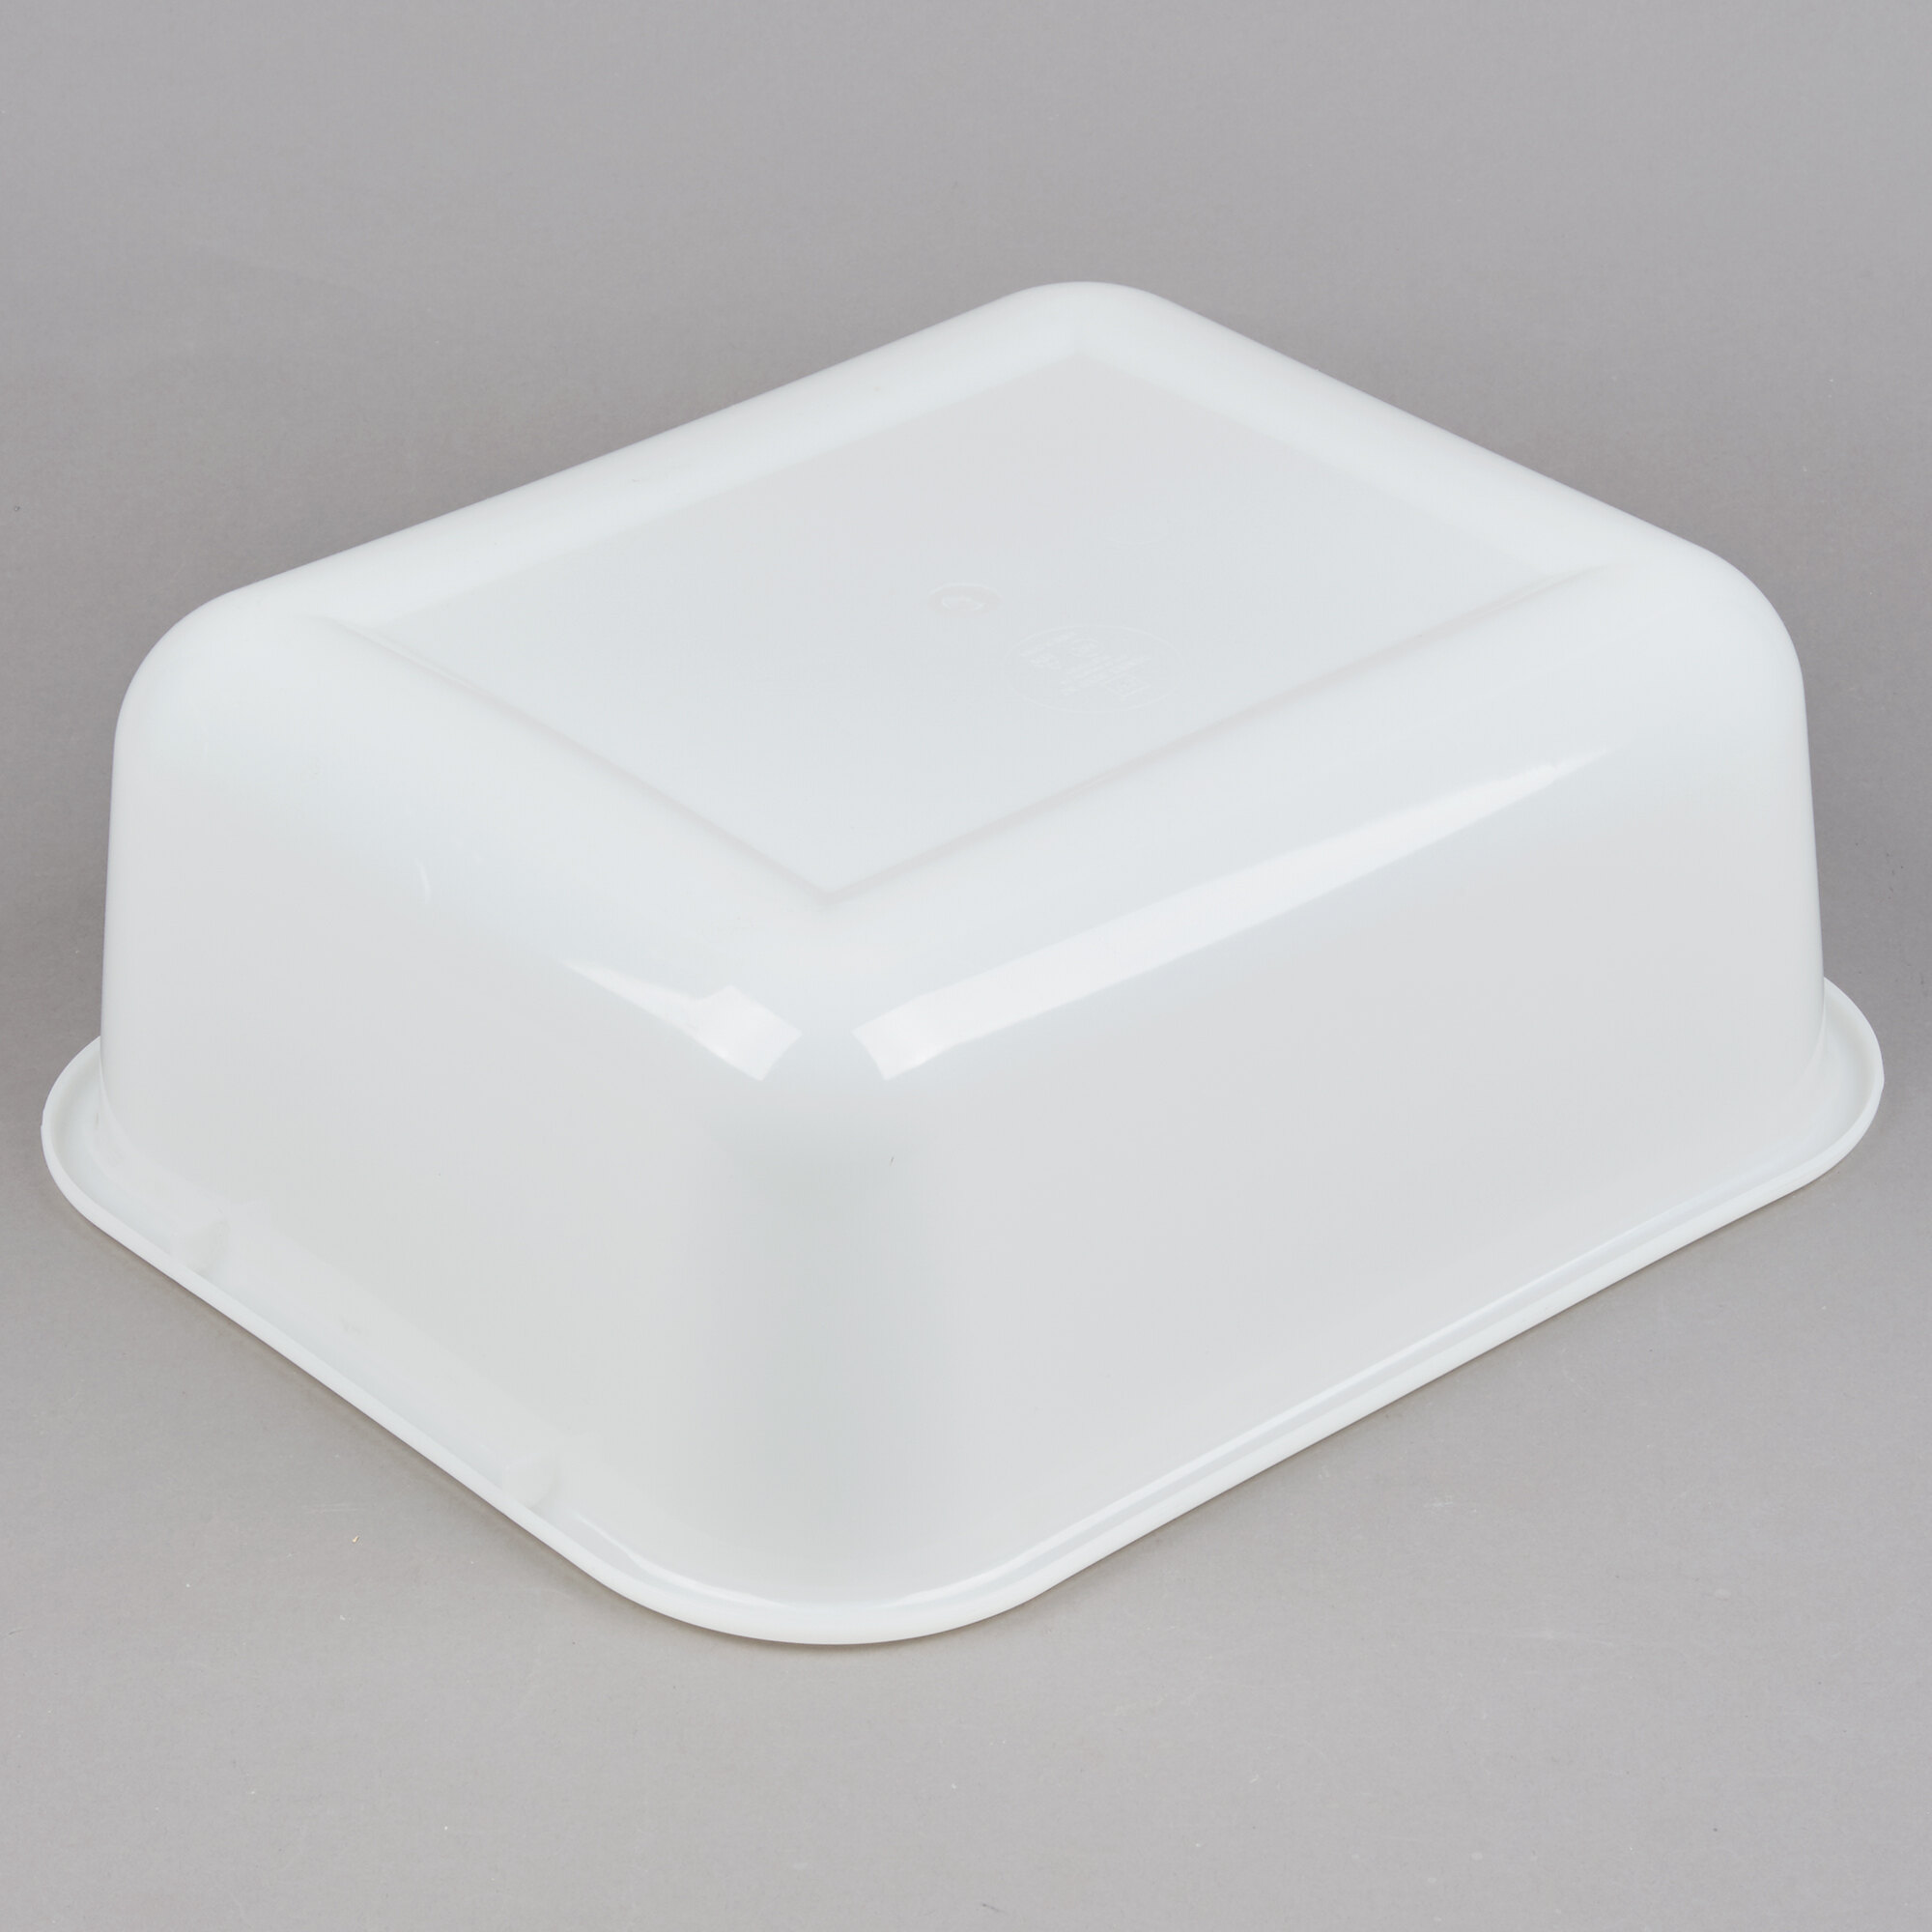 14" x 13" x 5" Plastic White Storage Box